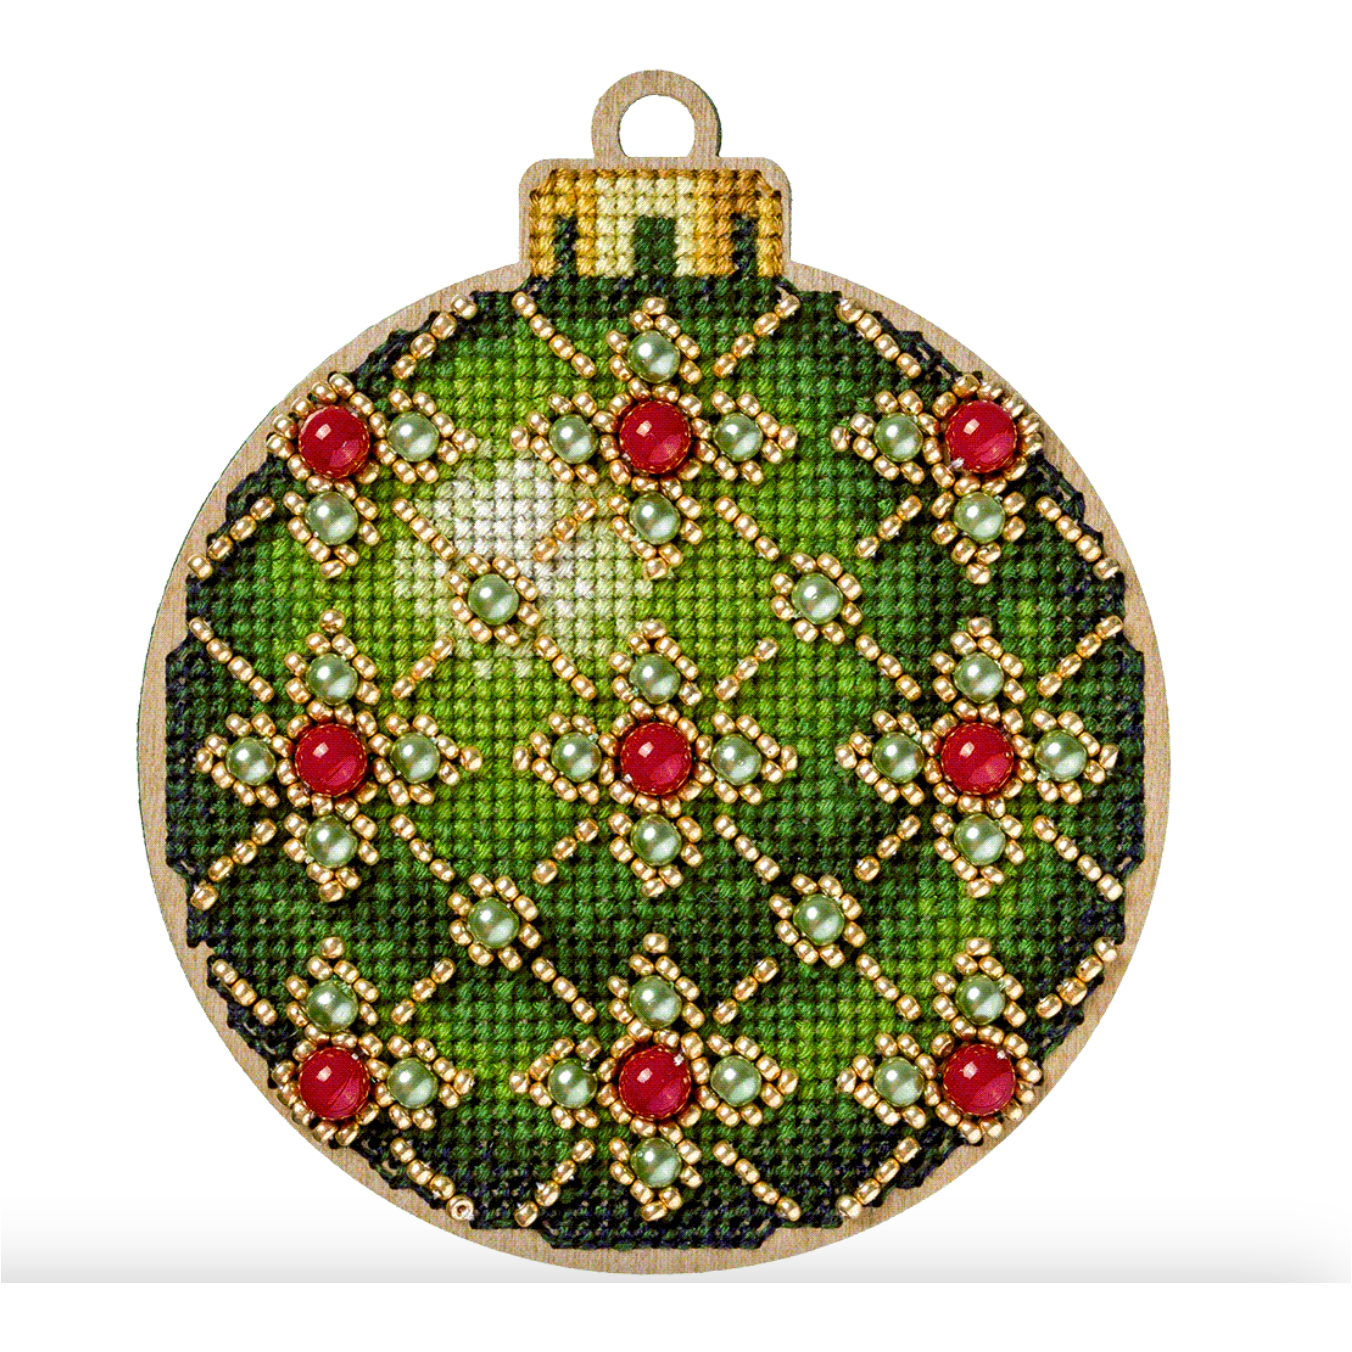 Holiday Hearts beaded needlepoint ornament kit